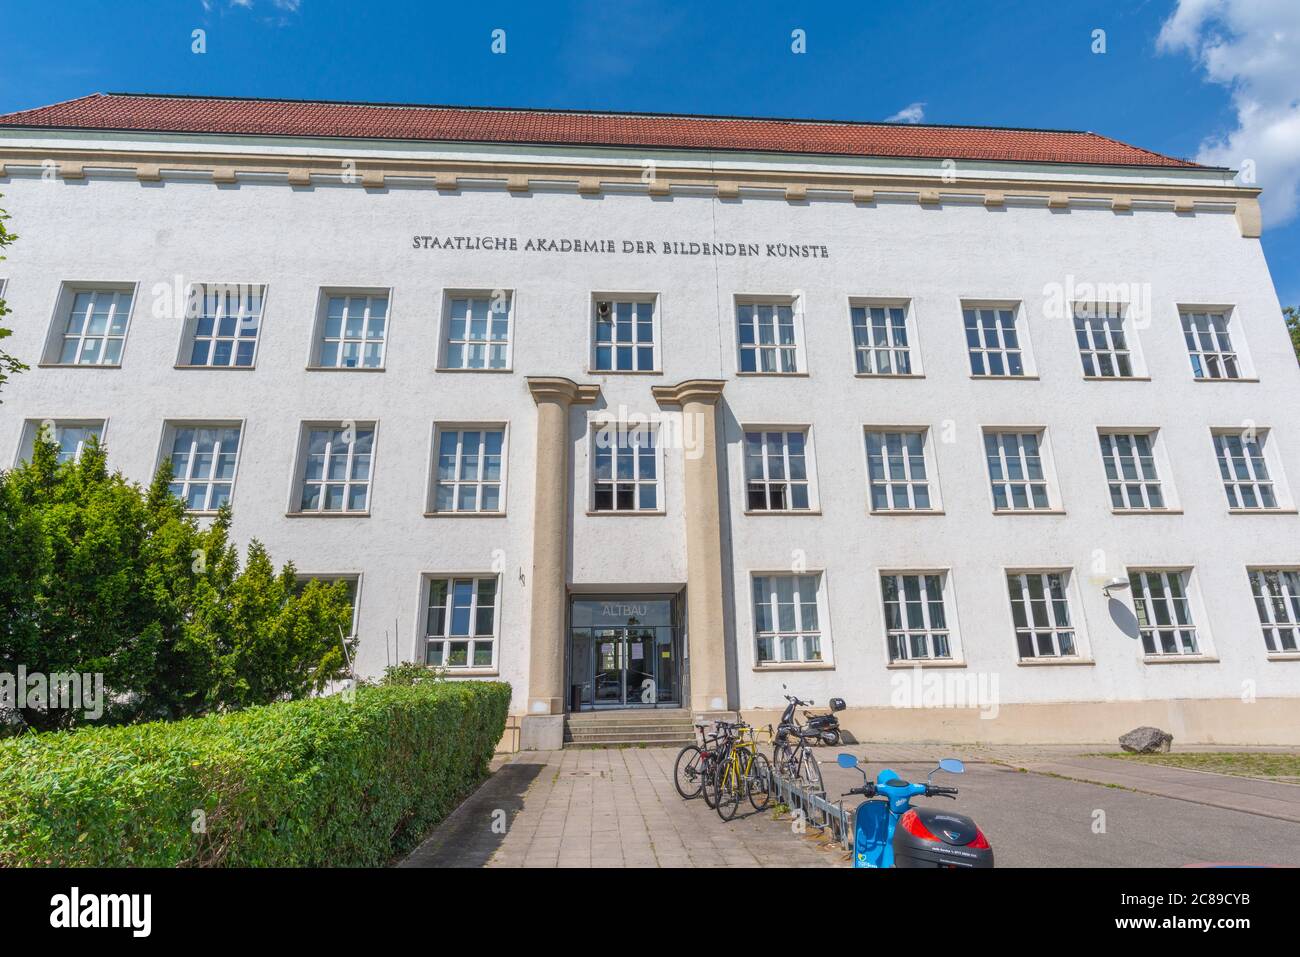 Staatliche Akademie der Bildenden Künste, State Academy of Fine Arts,  District  Weissenhof, Stuttgart, Baden-Württemberg, South Germany, Europe Stock Photo